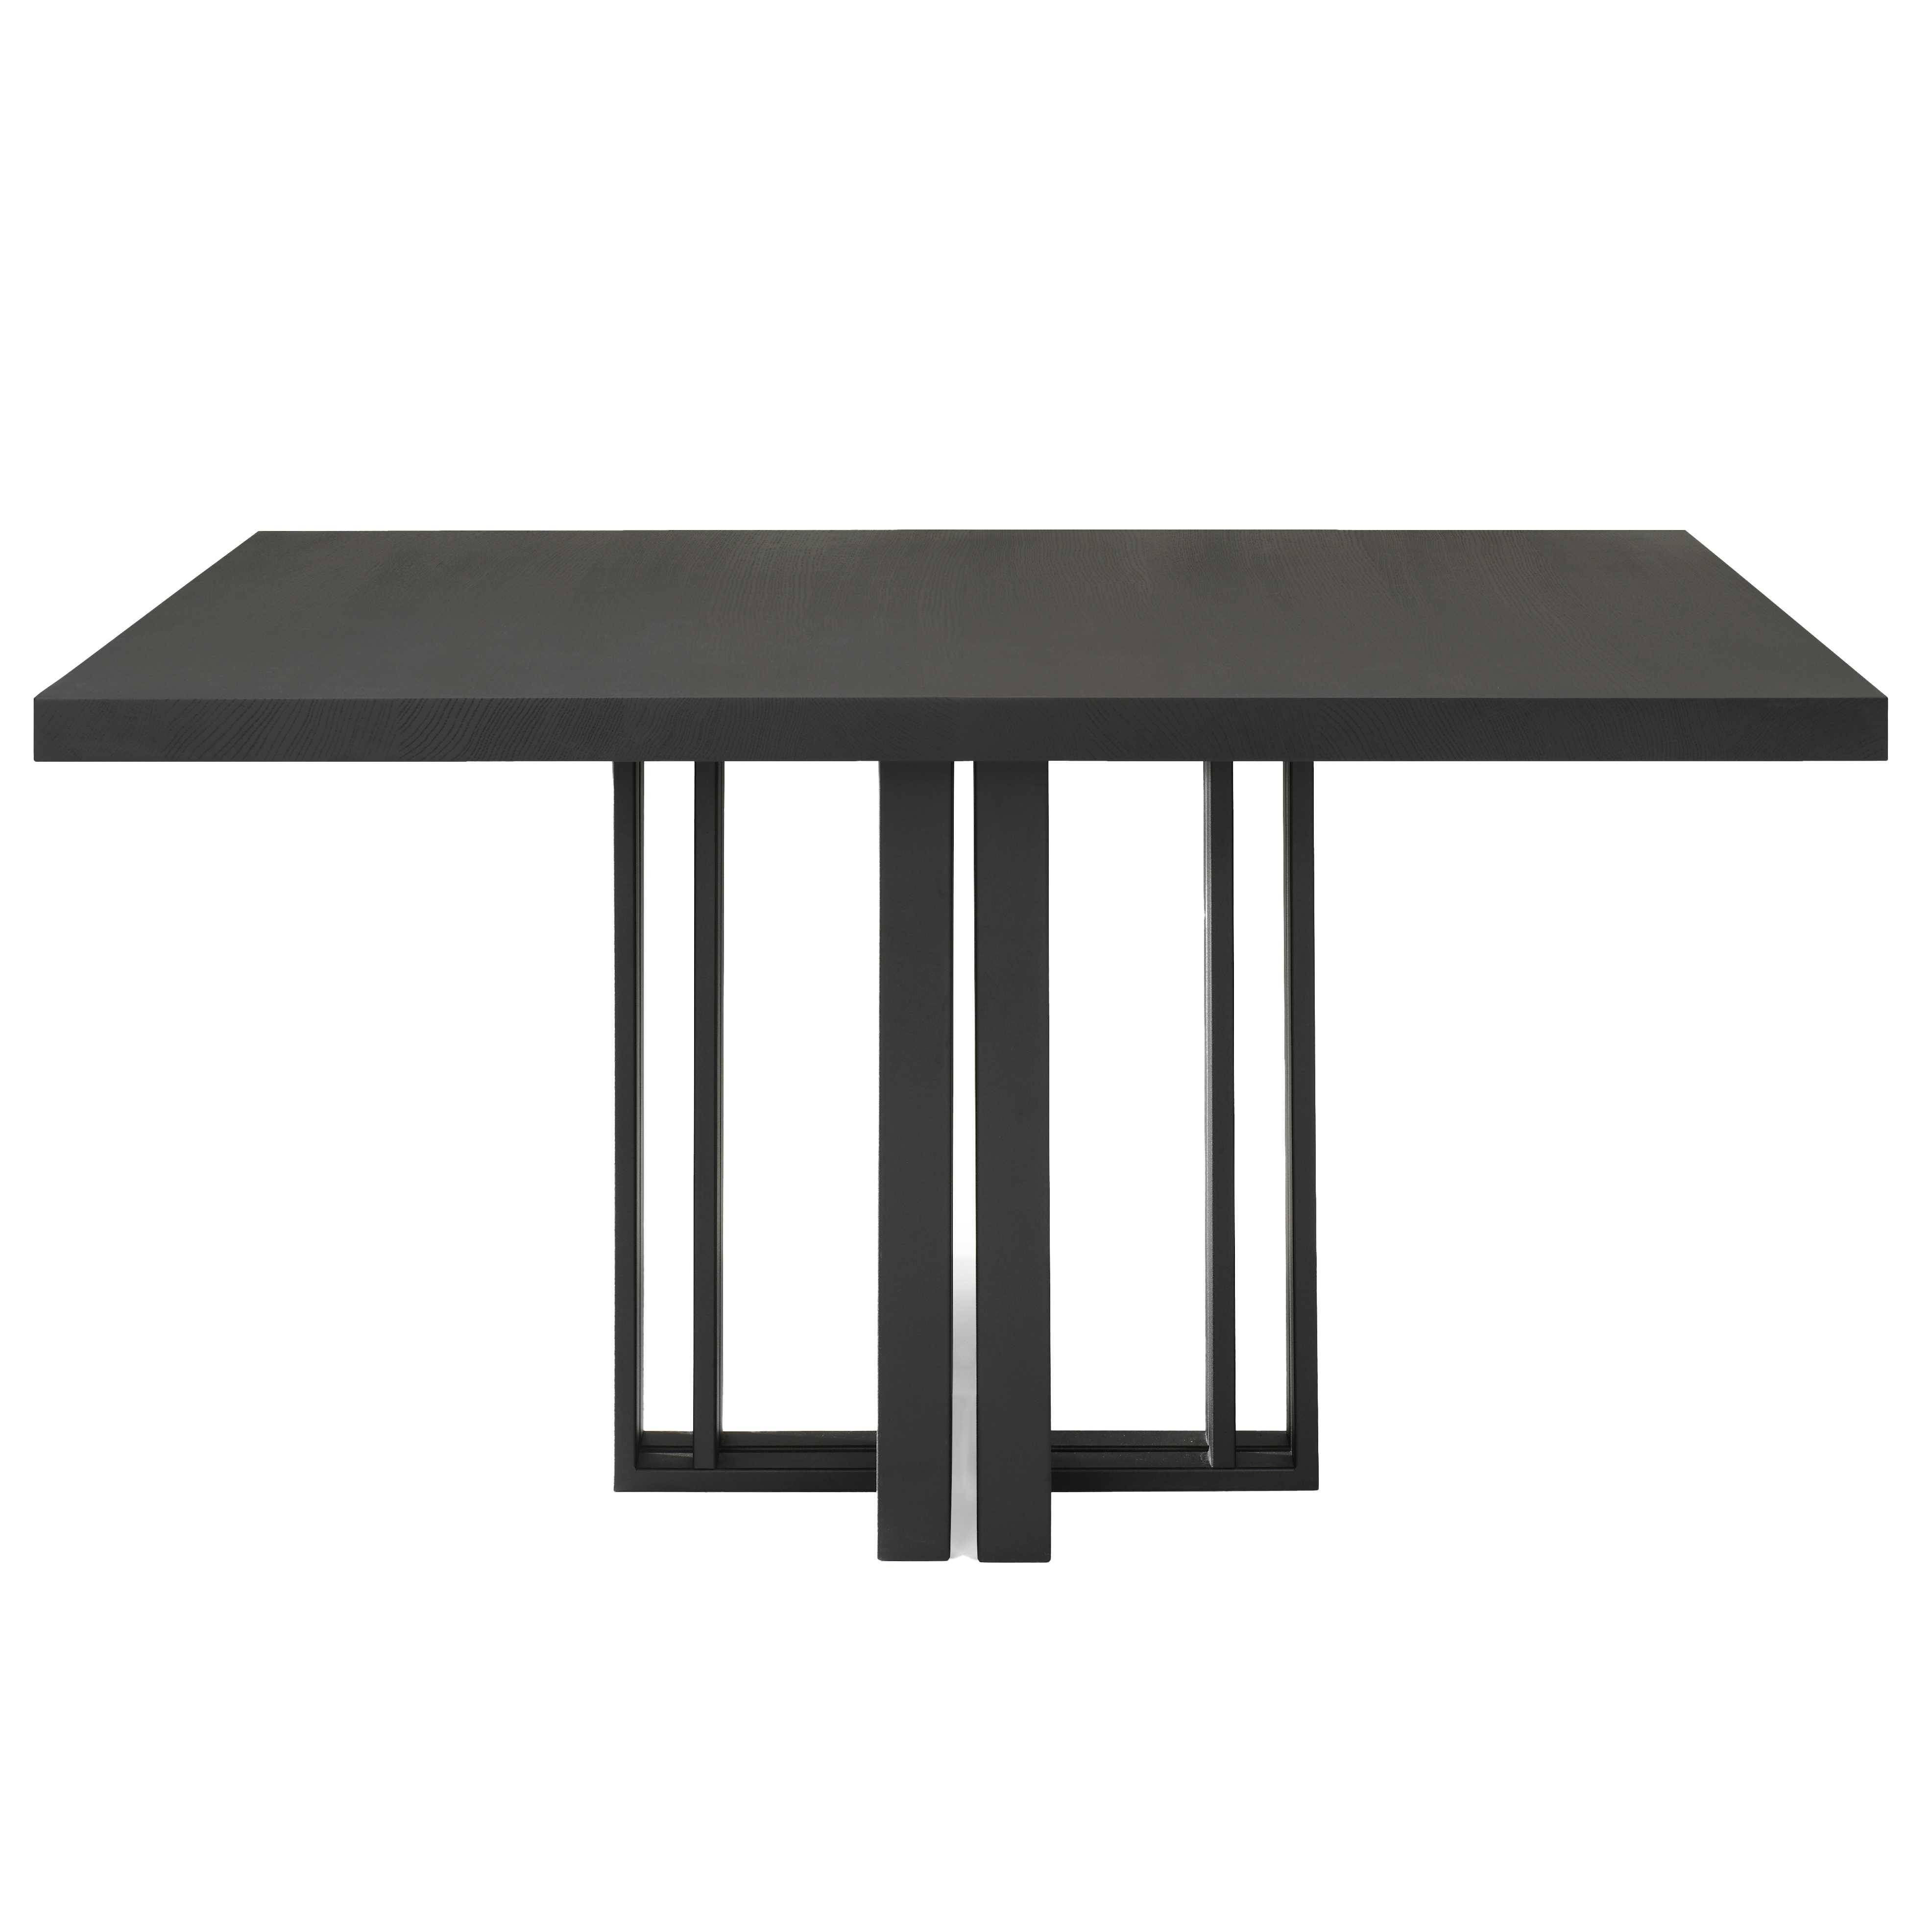 QLiv T2 tafel 140x140 Coal Black Eiken | Flinders